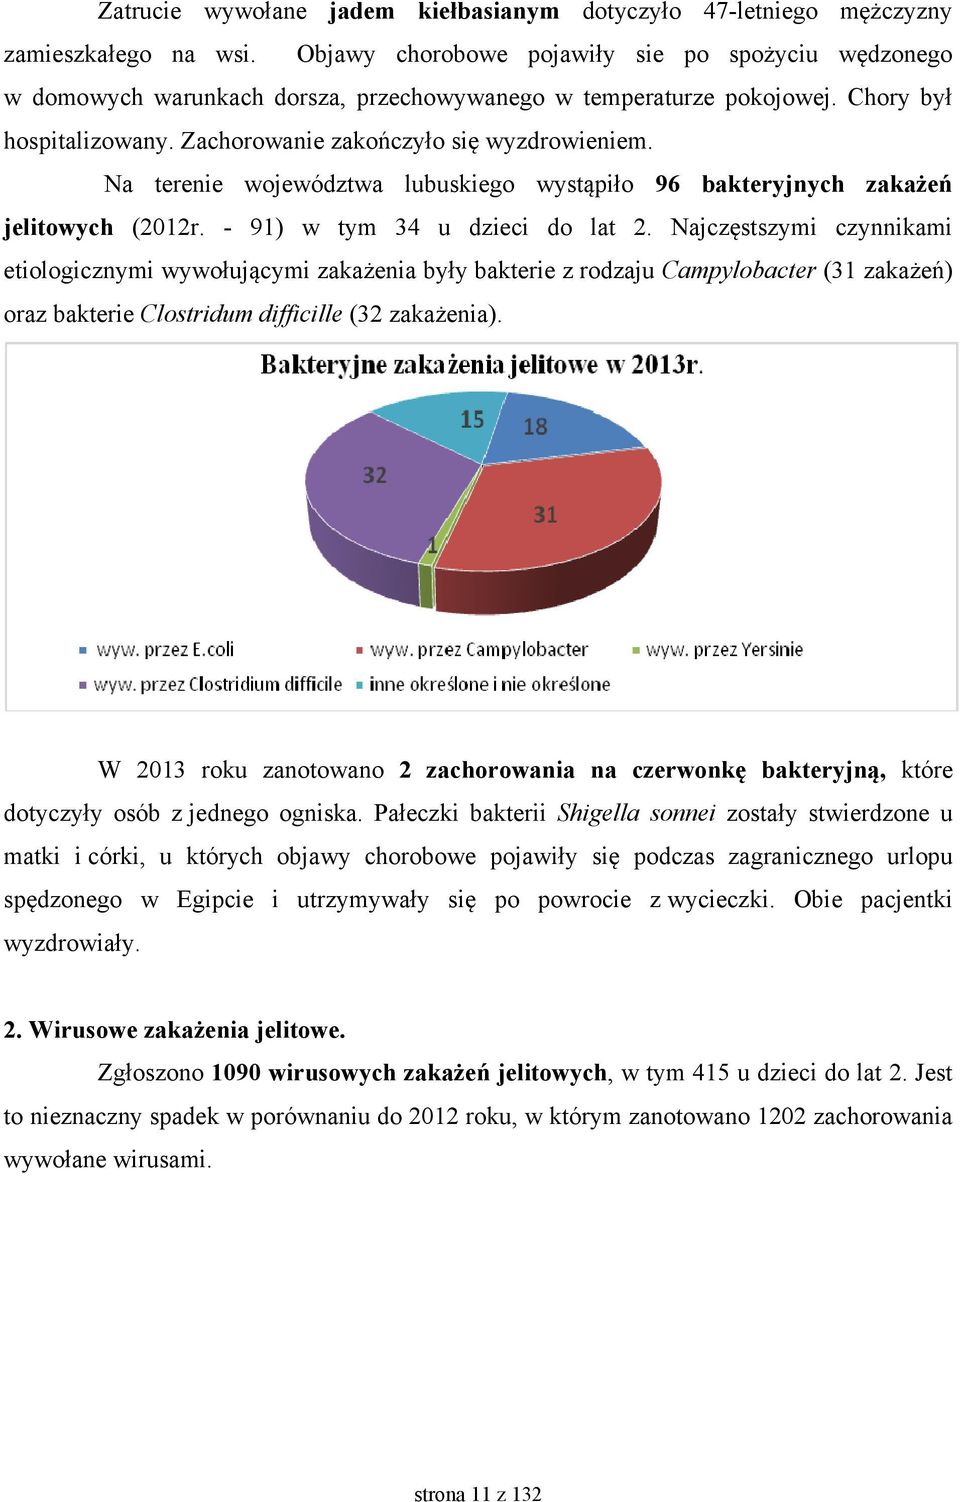 Na terenie województwa lubuskiego wystąpiło 96 bakteryjnych zakażeń jelitowych (2012r. - 91) w tym 34 u dzieci do lat 2.